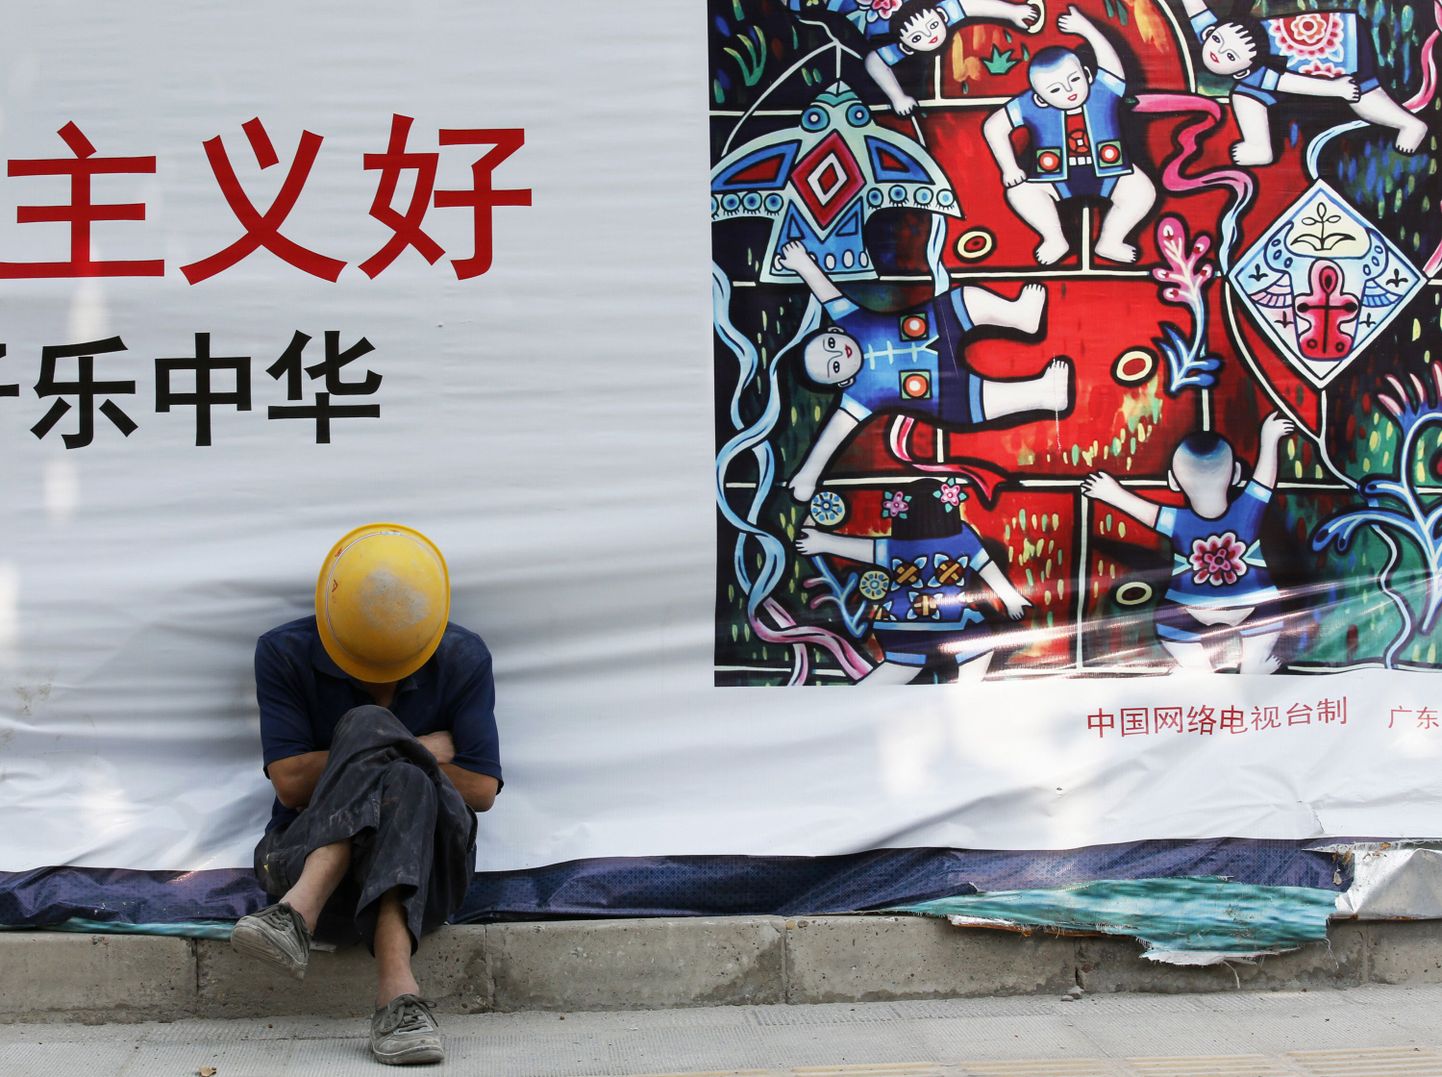 Hiina tööline tukastamas. Hiina tööstus elavnes augustis pärast neljakuulist langust.